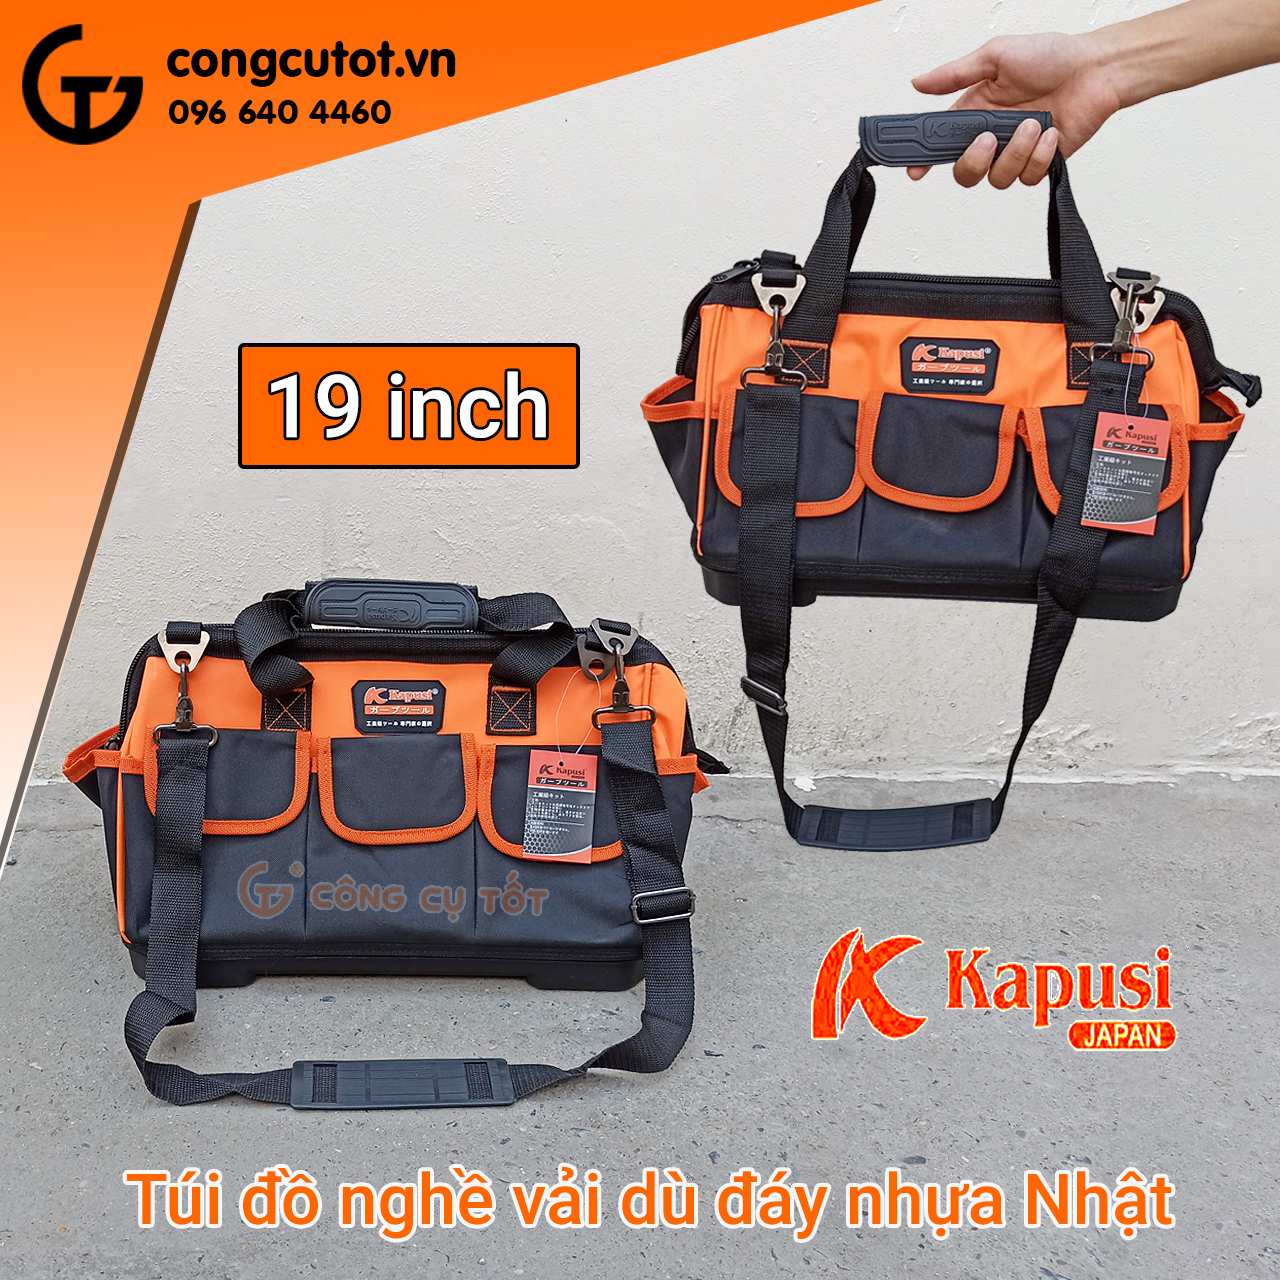 Túi đồ nghề 19 inch kèm 8 túi phụ bằng vải dù đáy nhựa cứng tới từ thương hiệu Kapusi của Nhật Bản